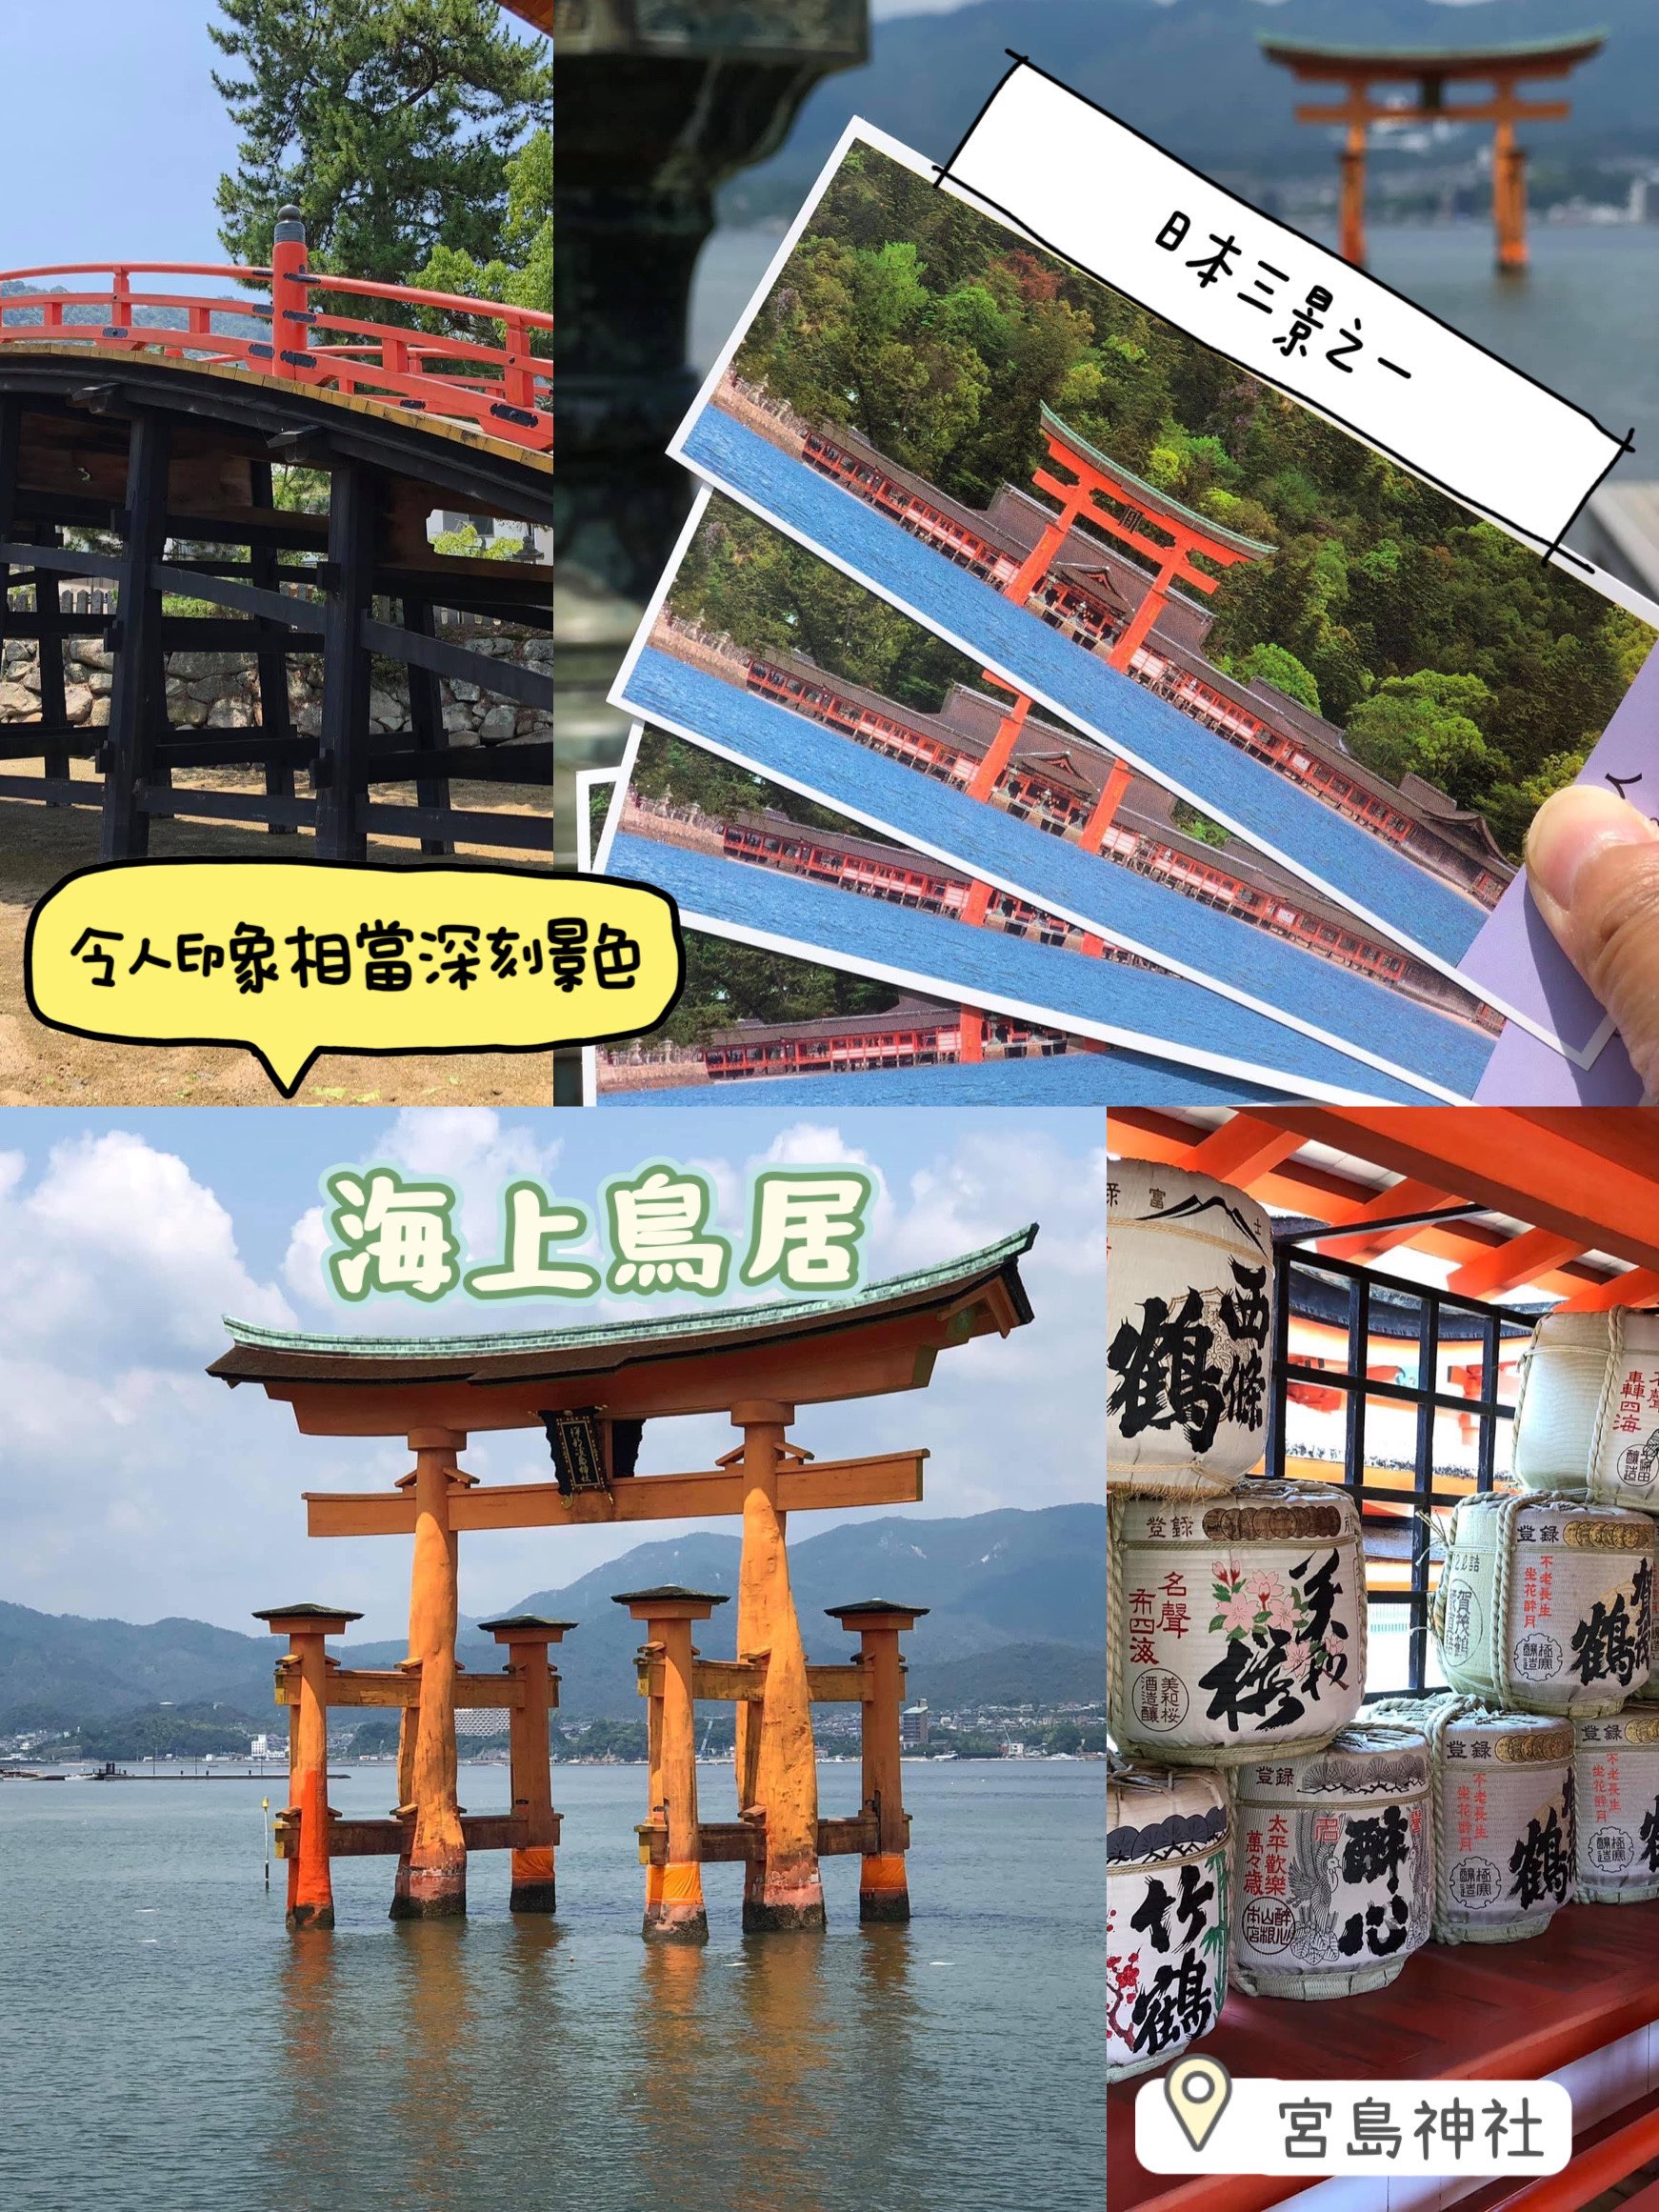 日本🗾三景之一😍宫岛神社⛩️最令海上鸟居❤️必打卡位